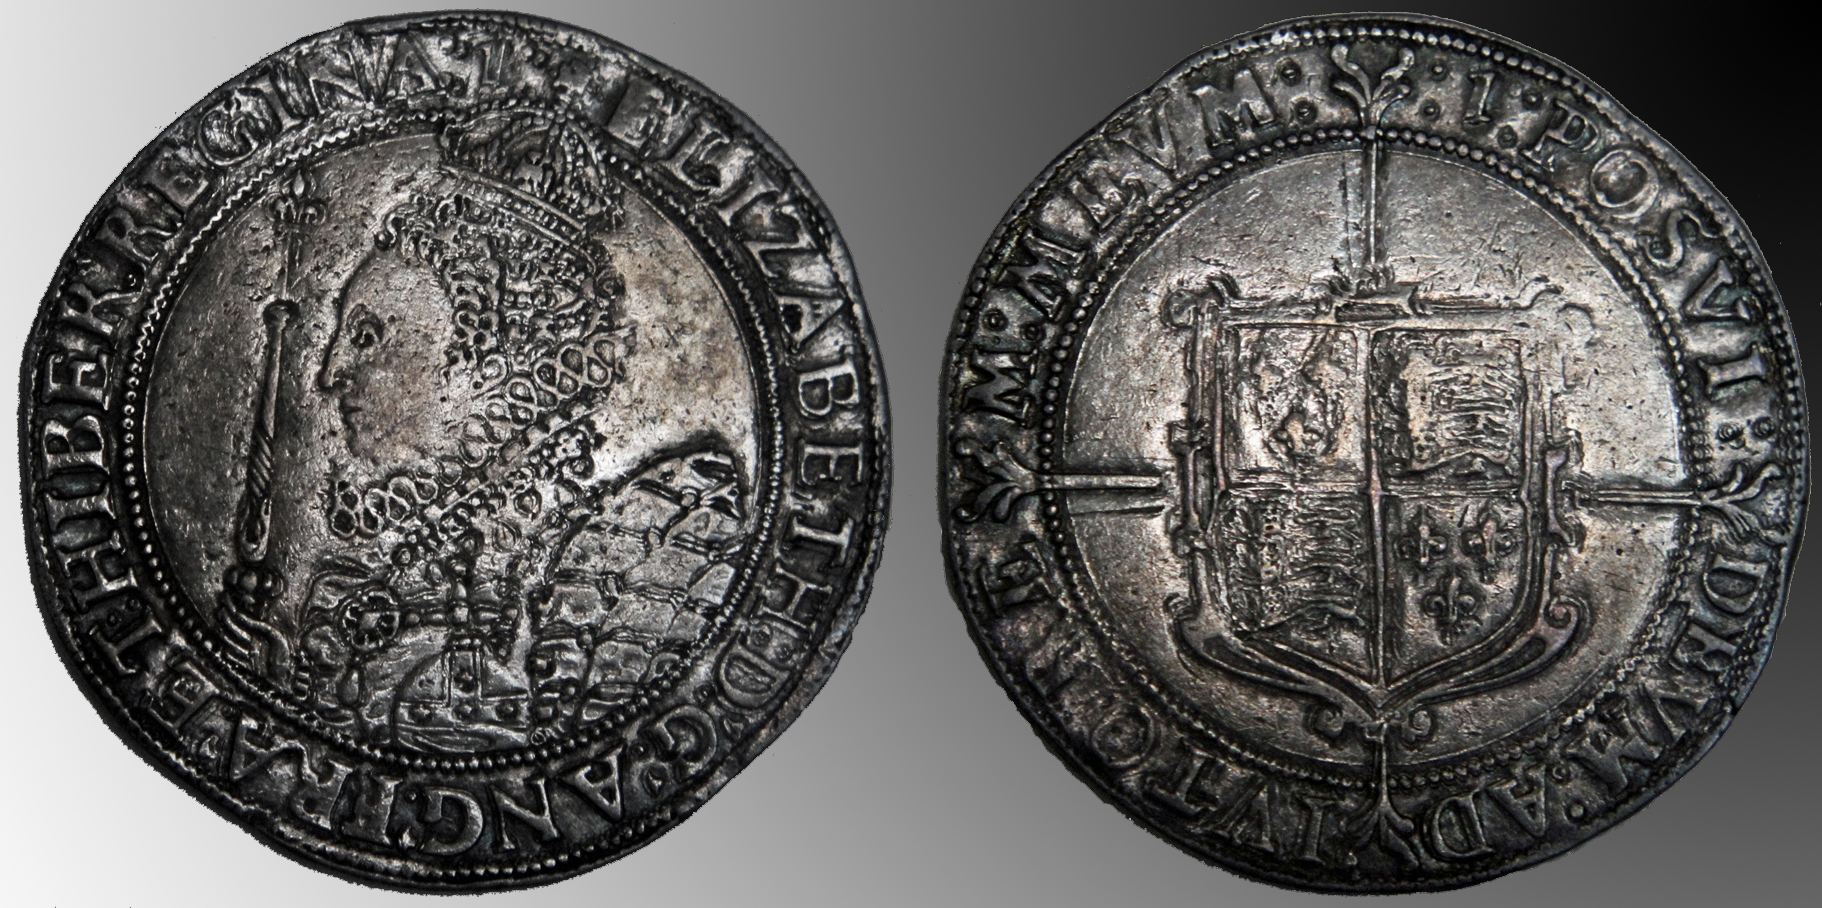 D-Camera Elizabeth I Crown, mm 1, 1602, reduced image,  11-15-20.jpg